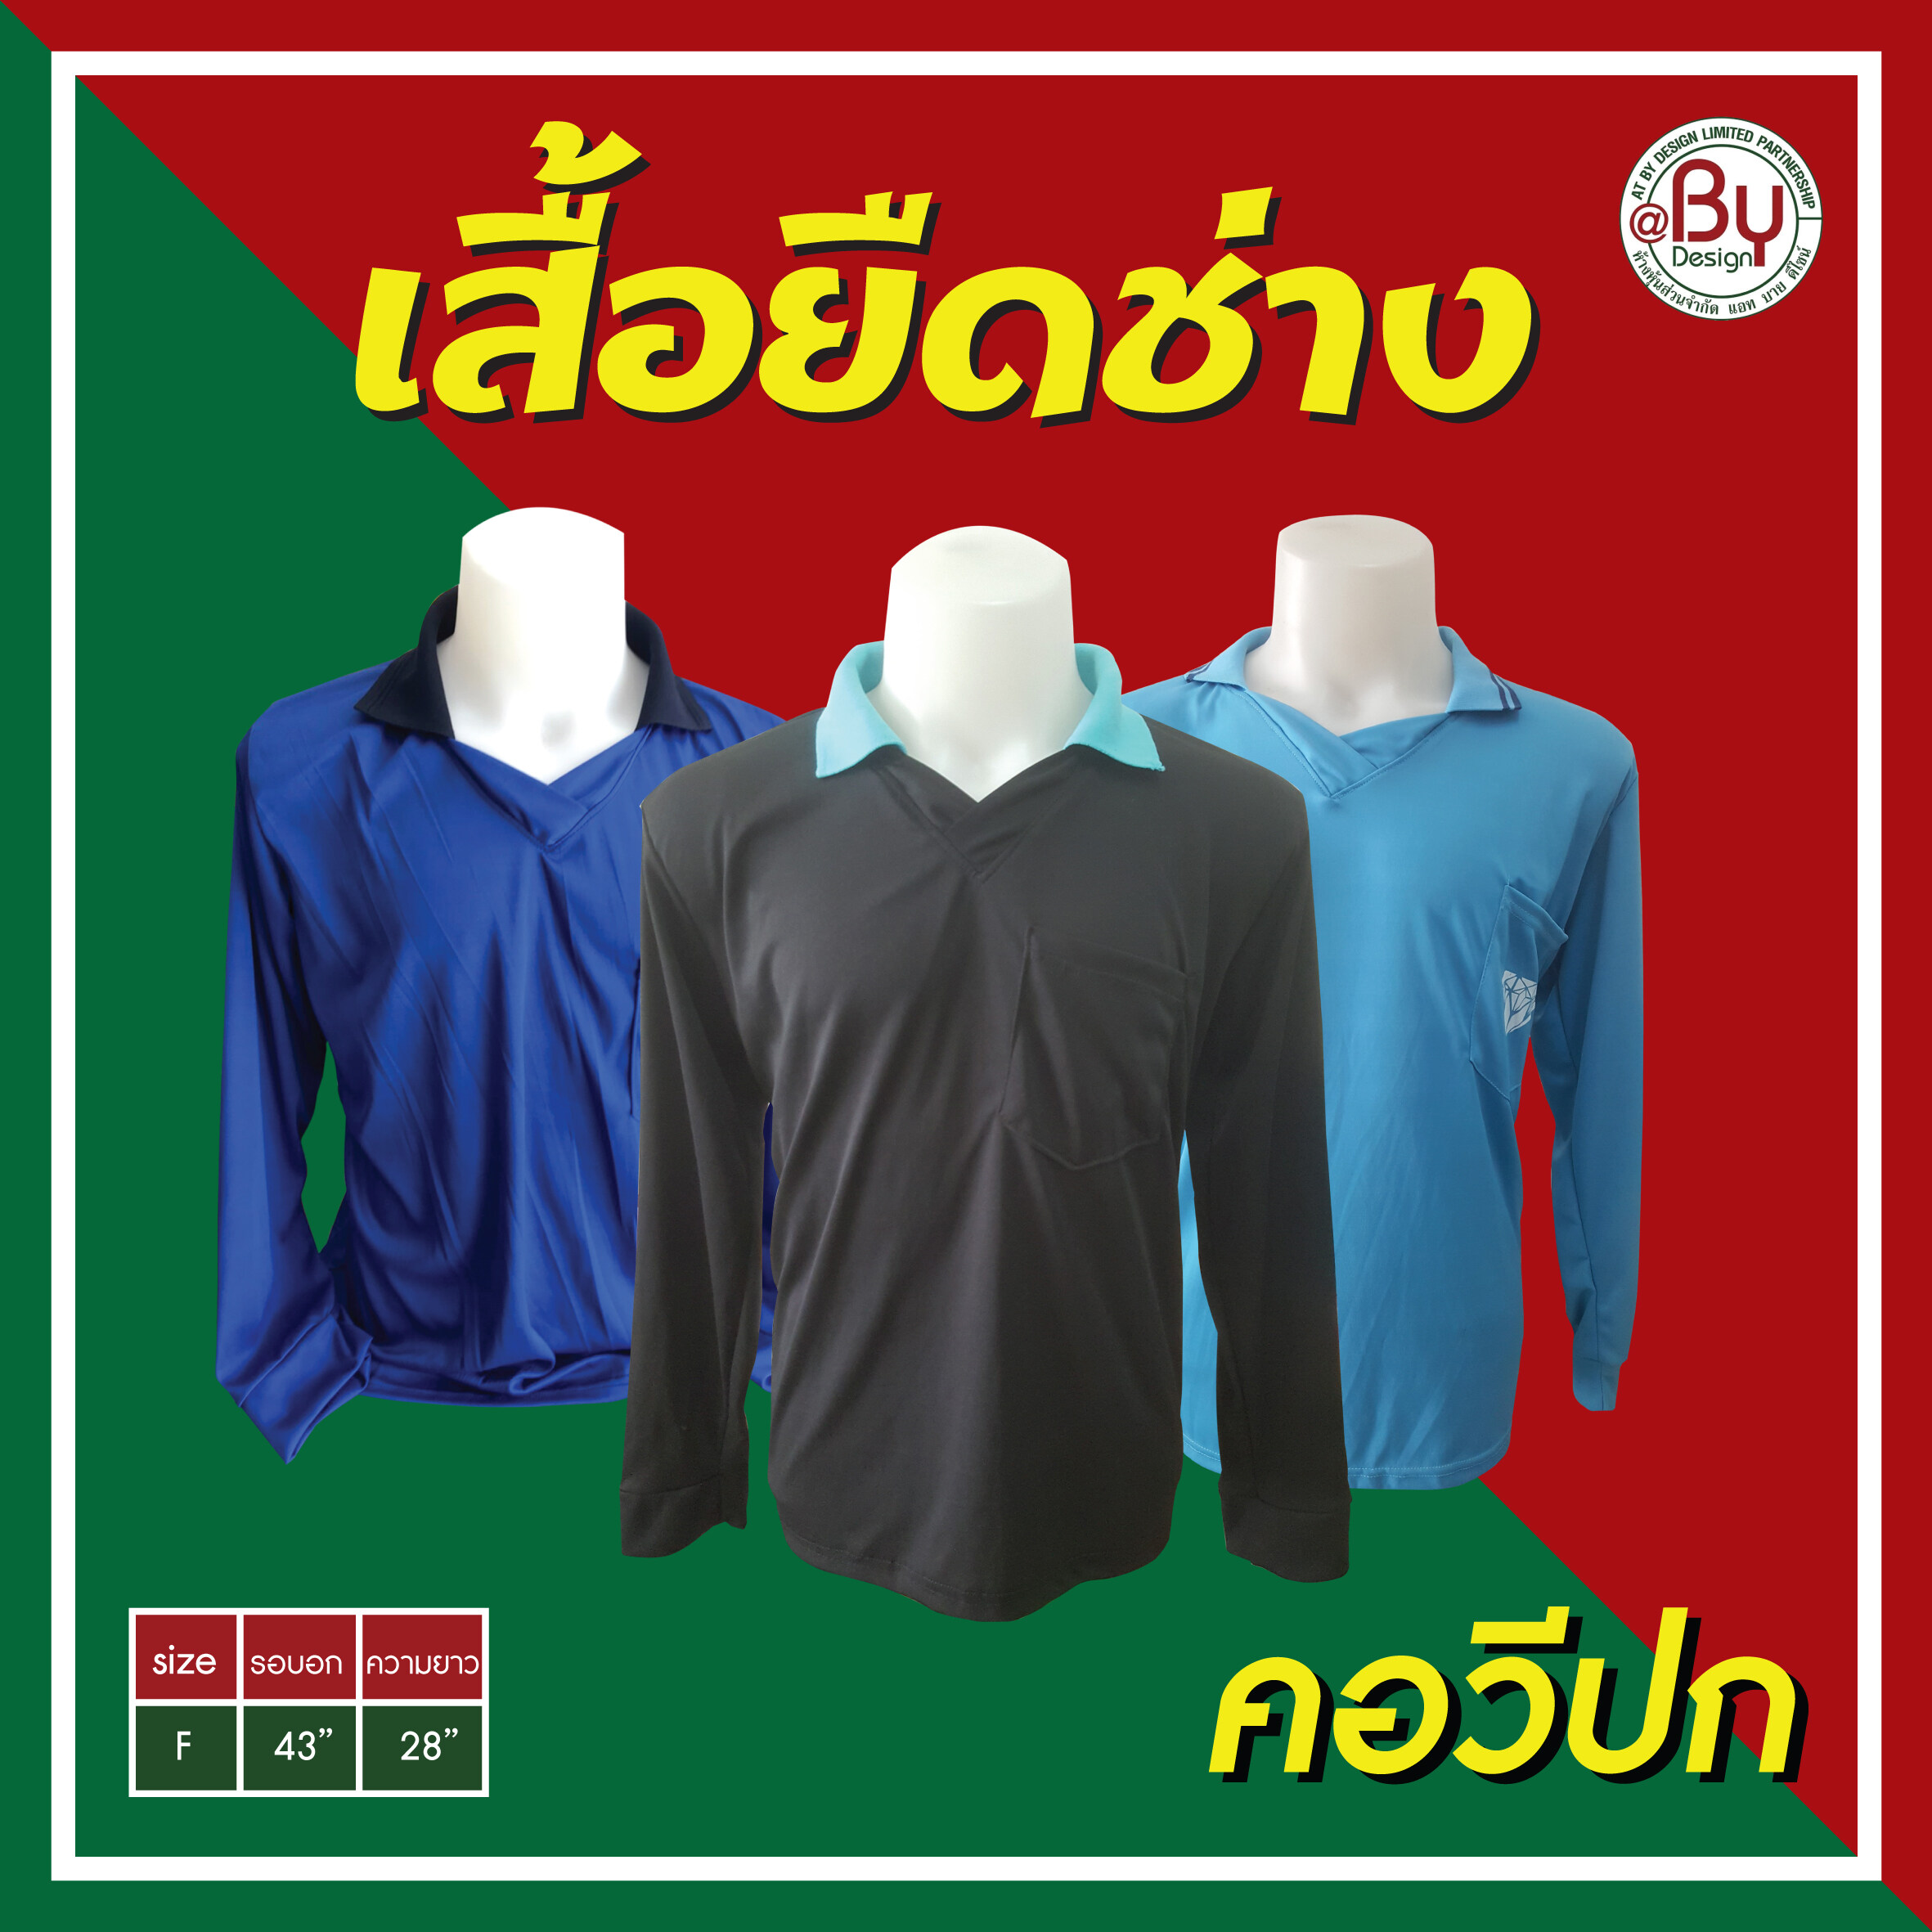 เสื้อคนงาน เสื้อทำงาน เสื้อยืดคนงานคอวีปก (คละสี-ฟรีไซต์) - (อก43